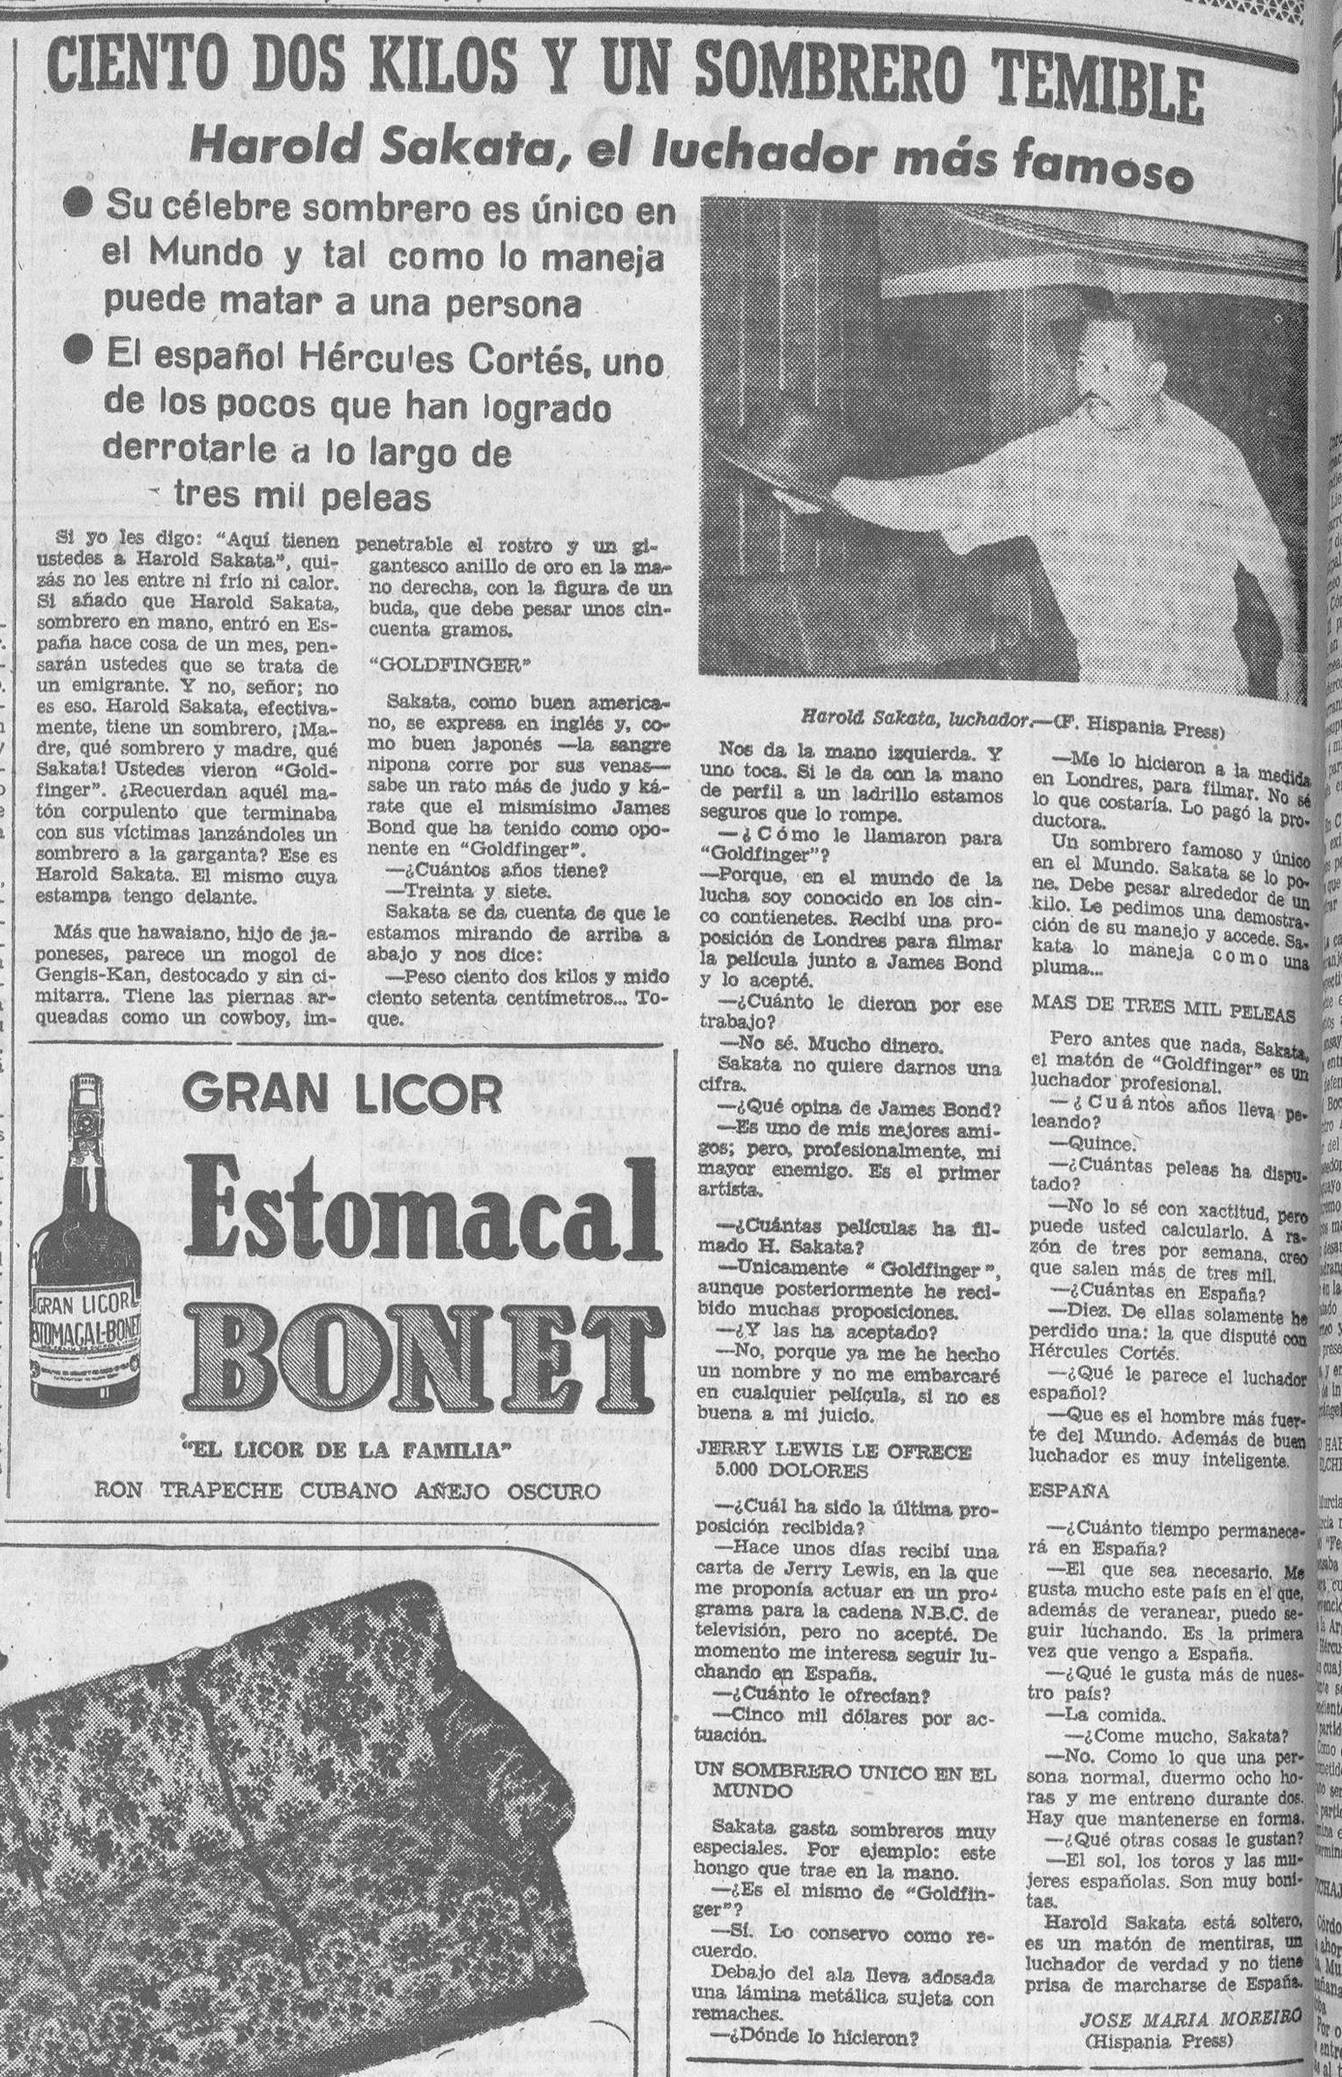 03 1967 08 18 Diario de Burgos Harold Sakata